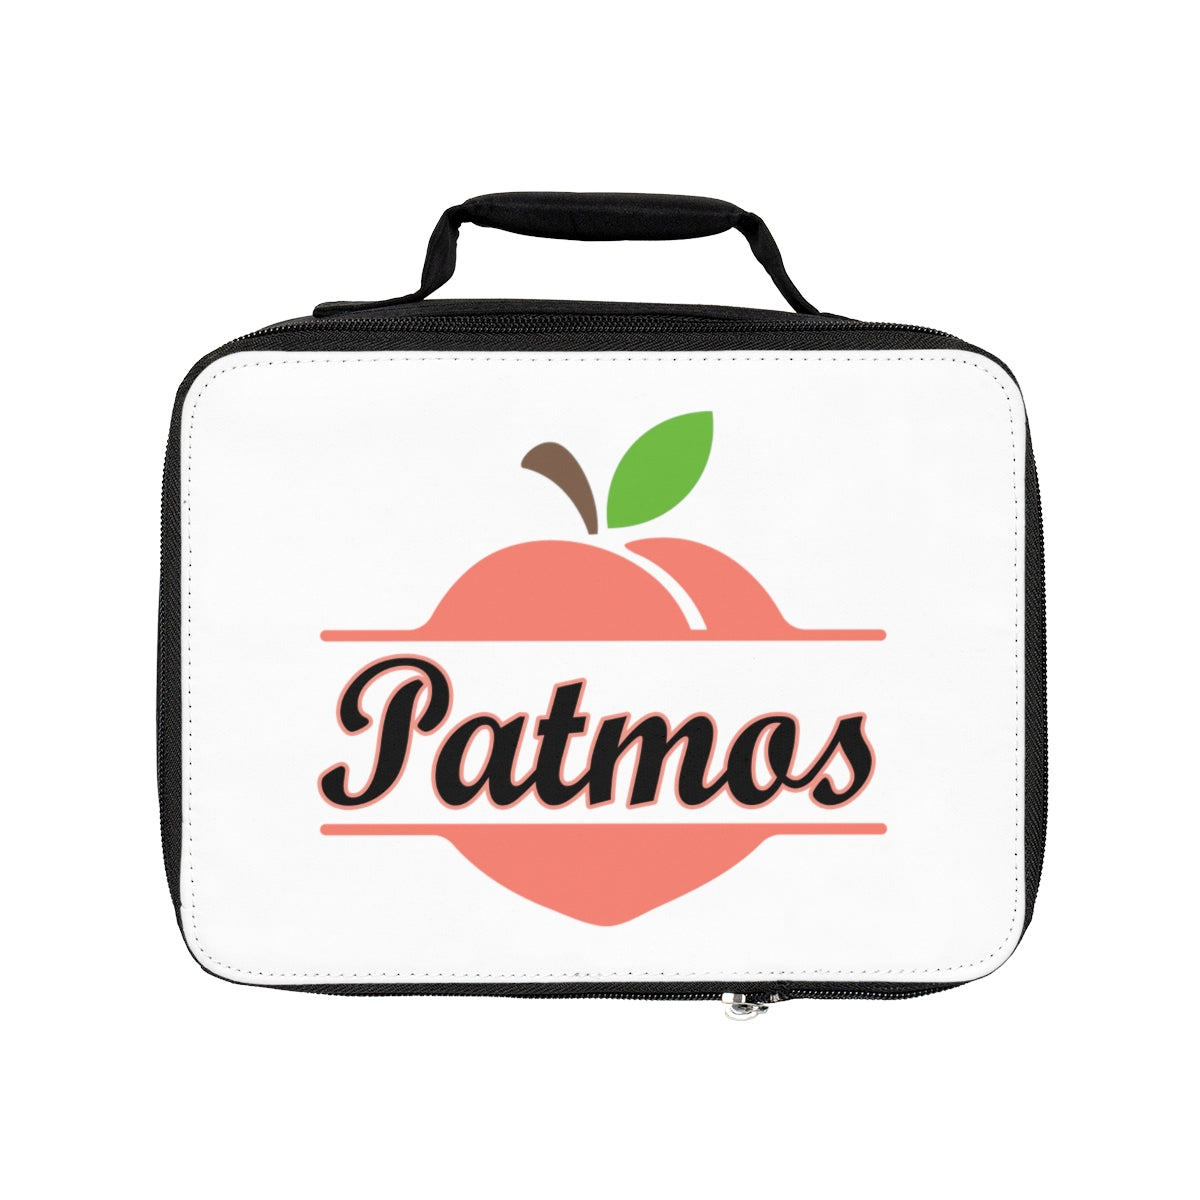 Patmos Georgia Lunch Bag